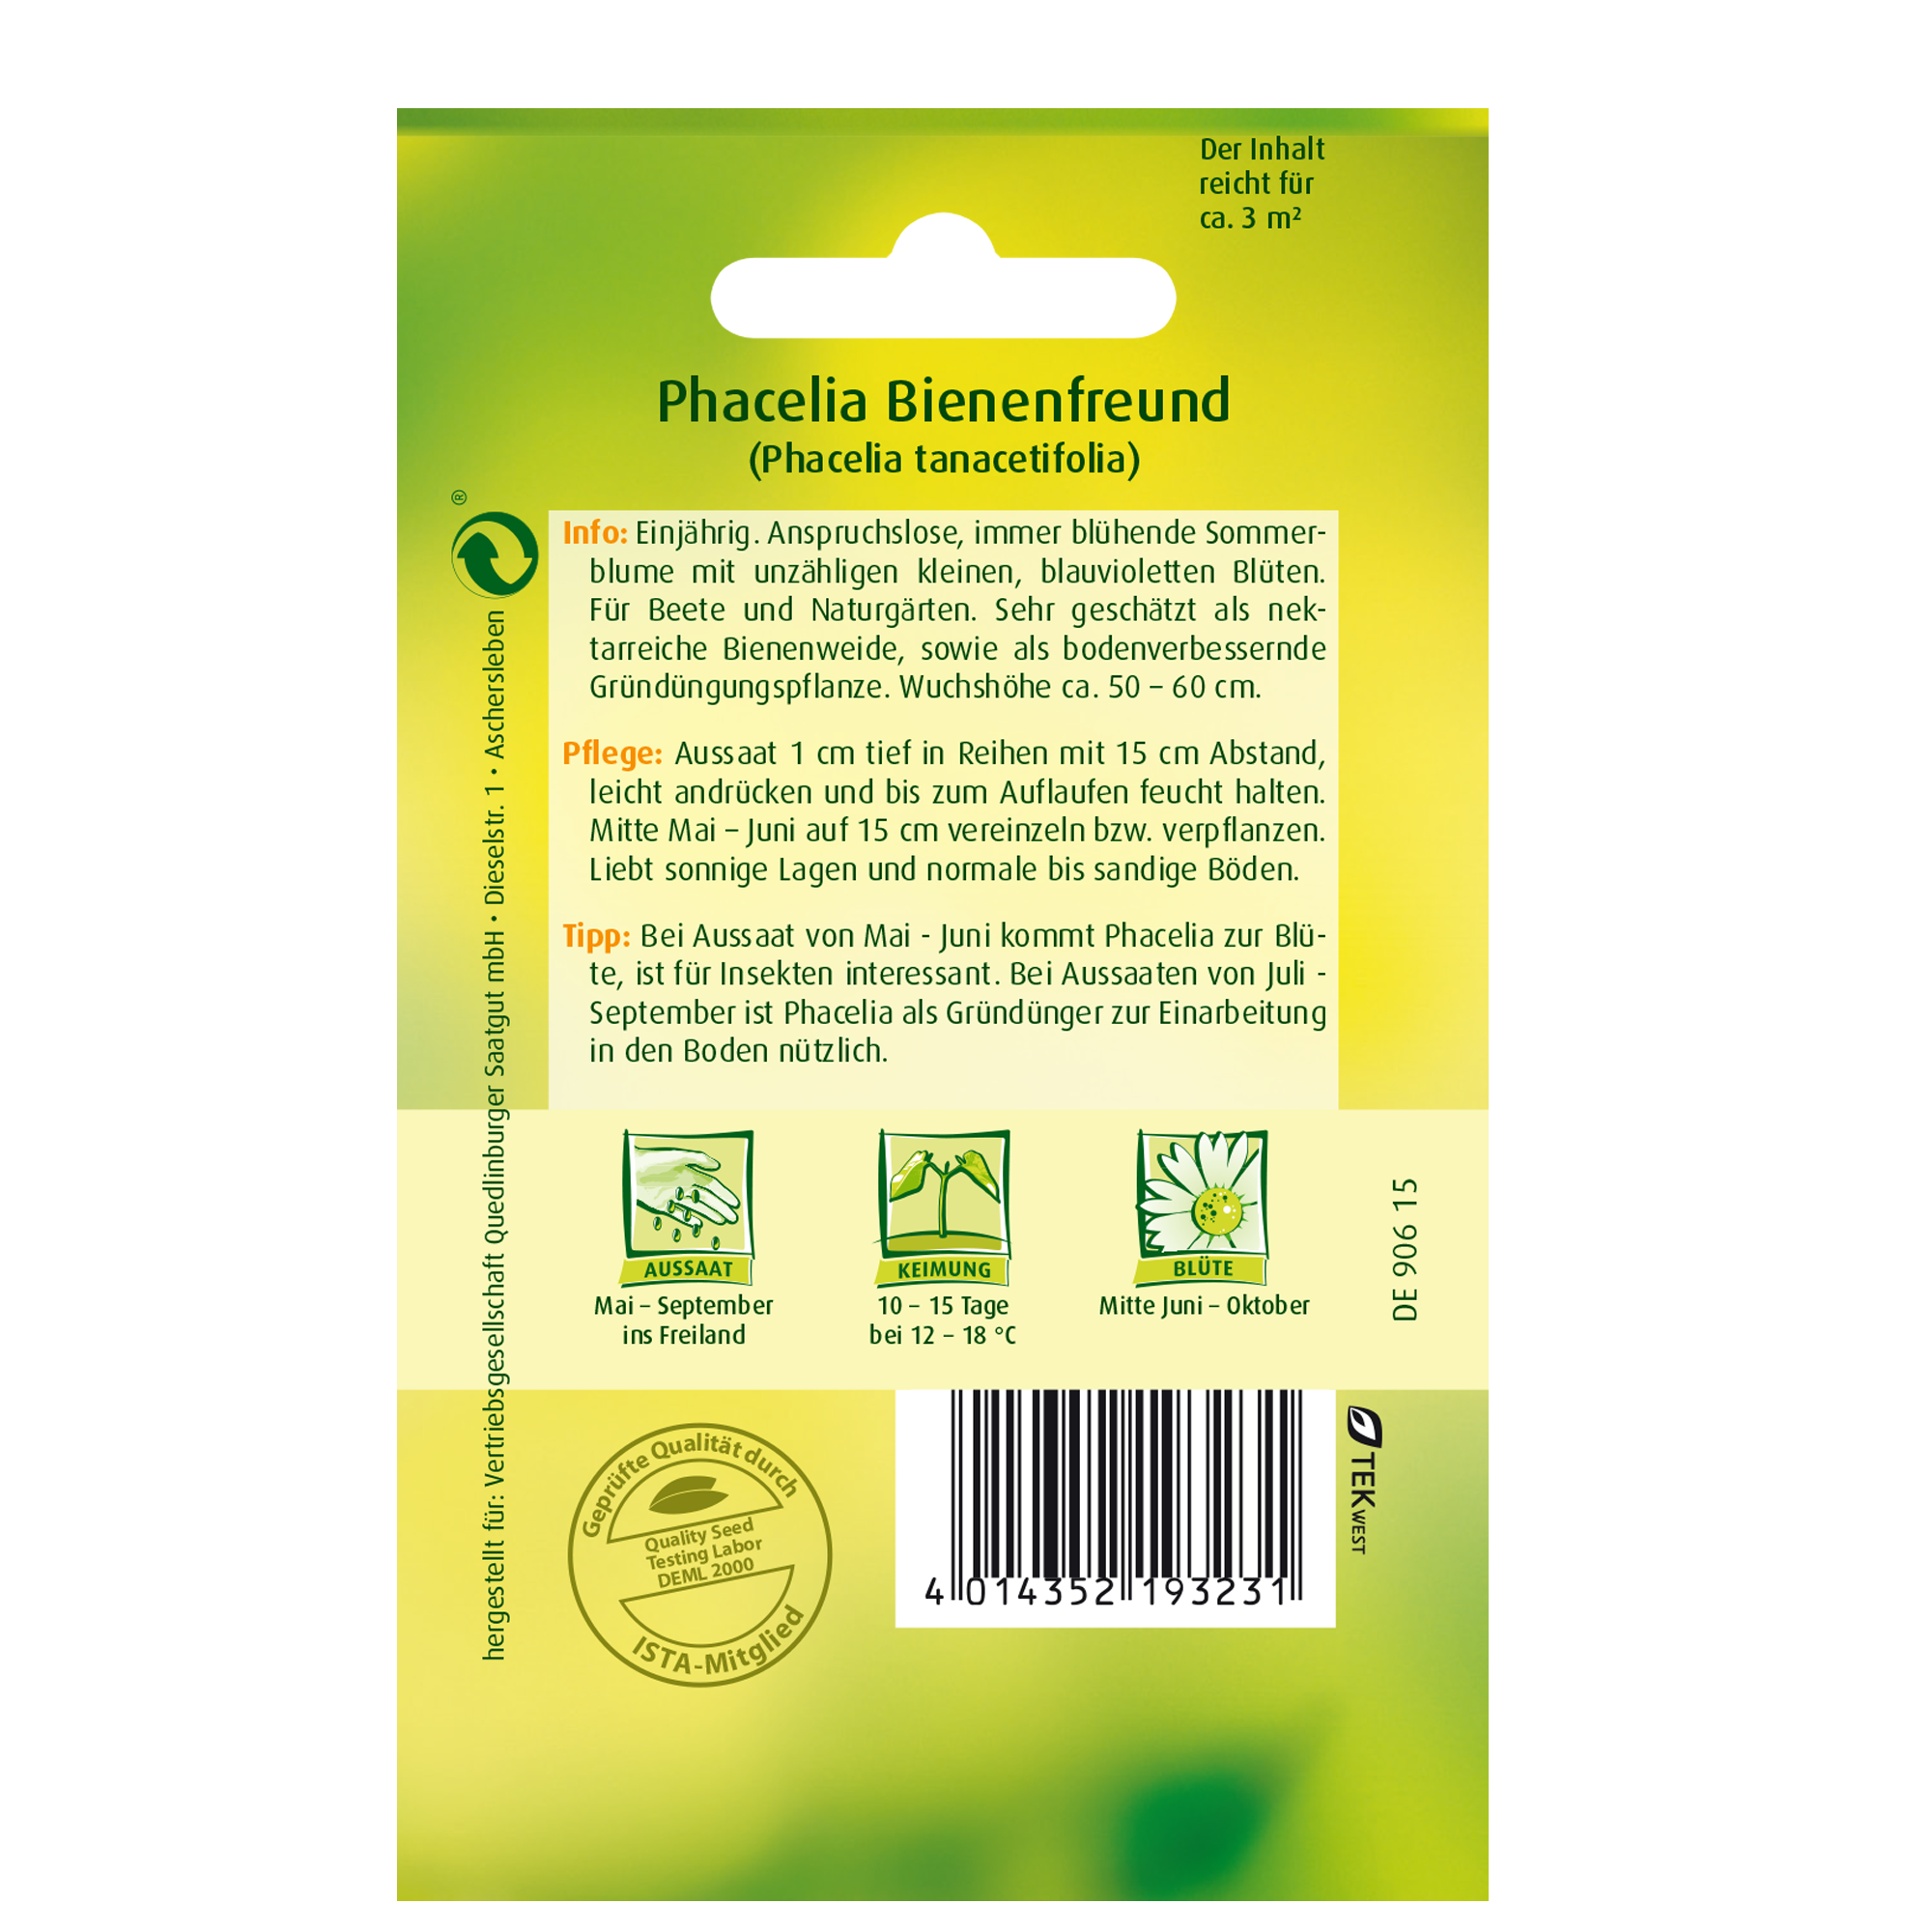 Phacelia 'Bienenfreund' + product picture